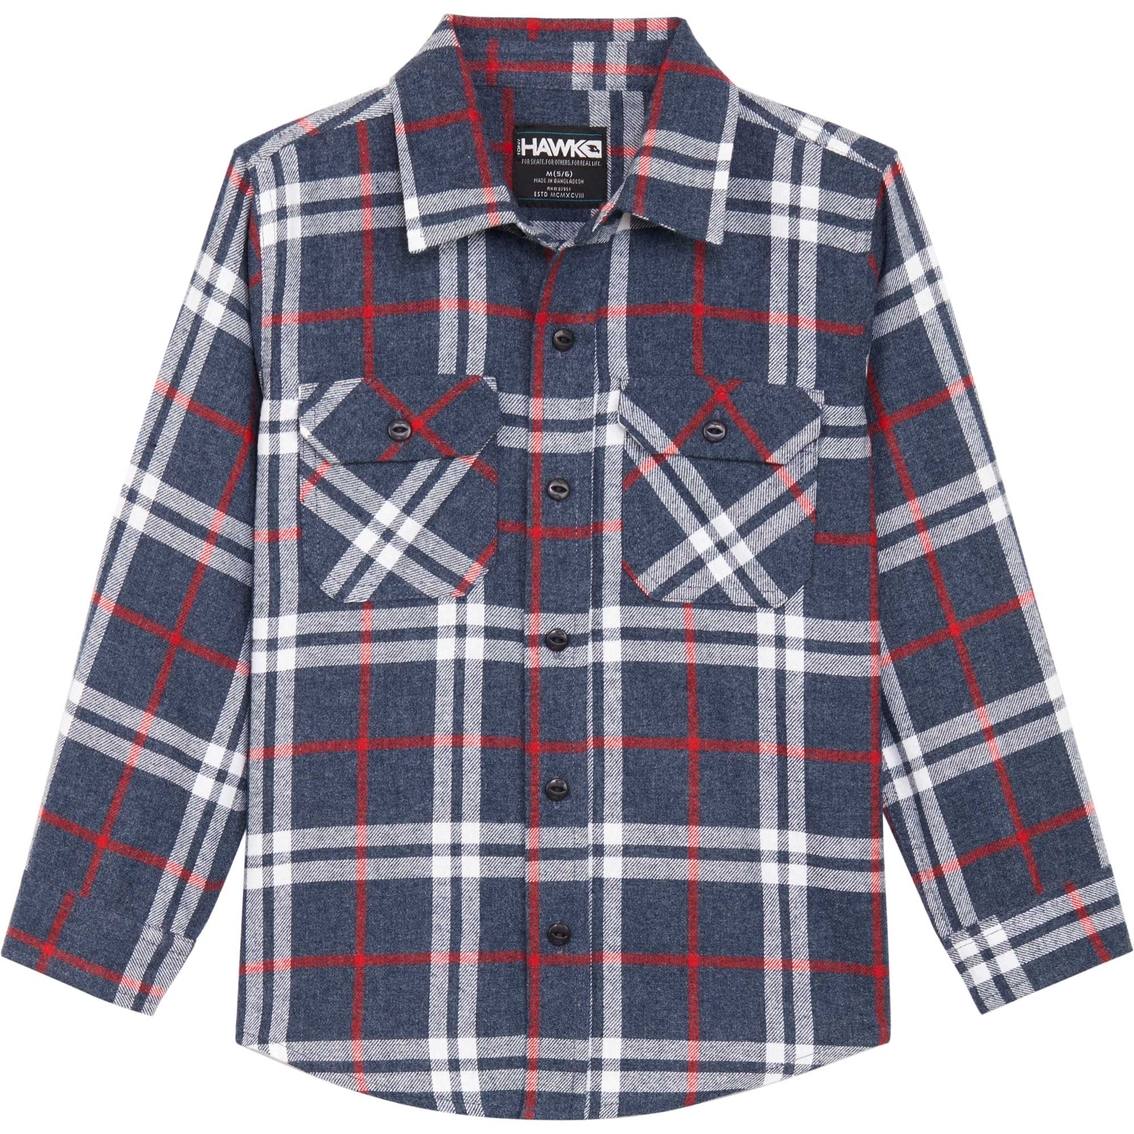 Tony Hawk Little Boys Flannel Shirt | Boys 4-7x | Clothing ...